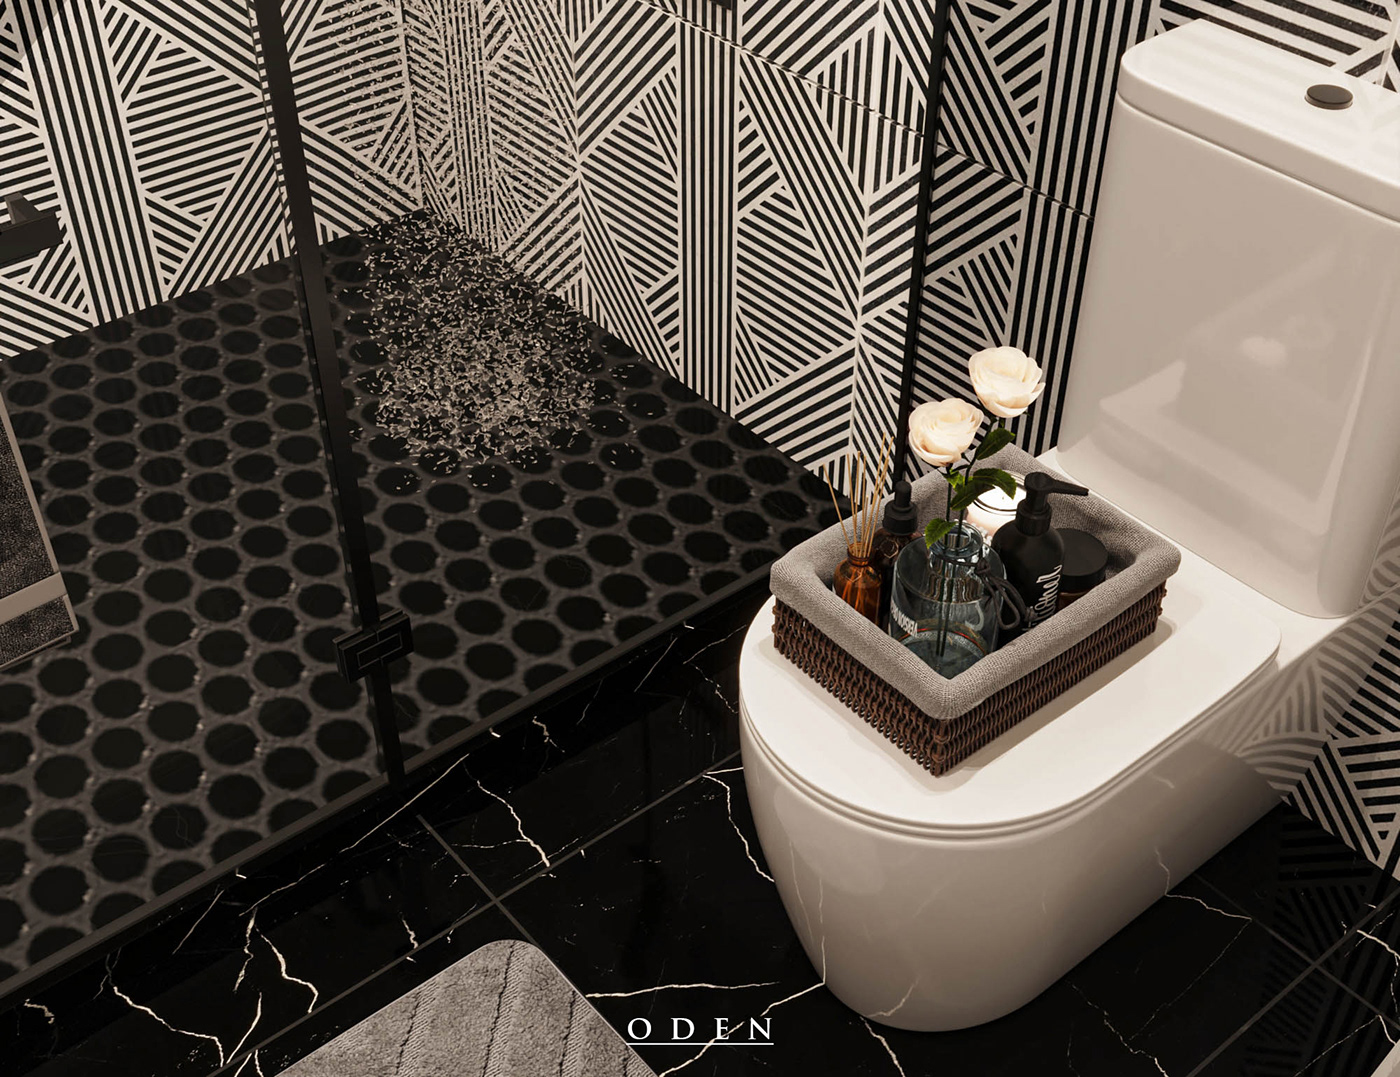 interior design  architecture visualization Render 3D modern bathroom bathroom interior bathroom design